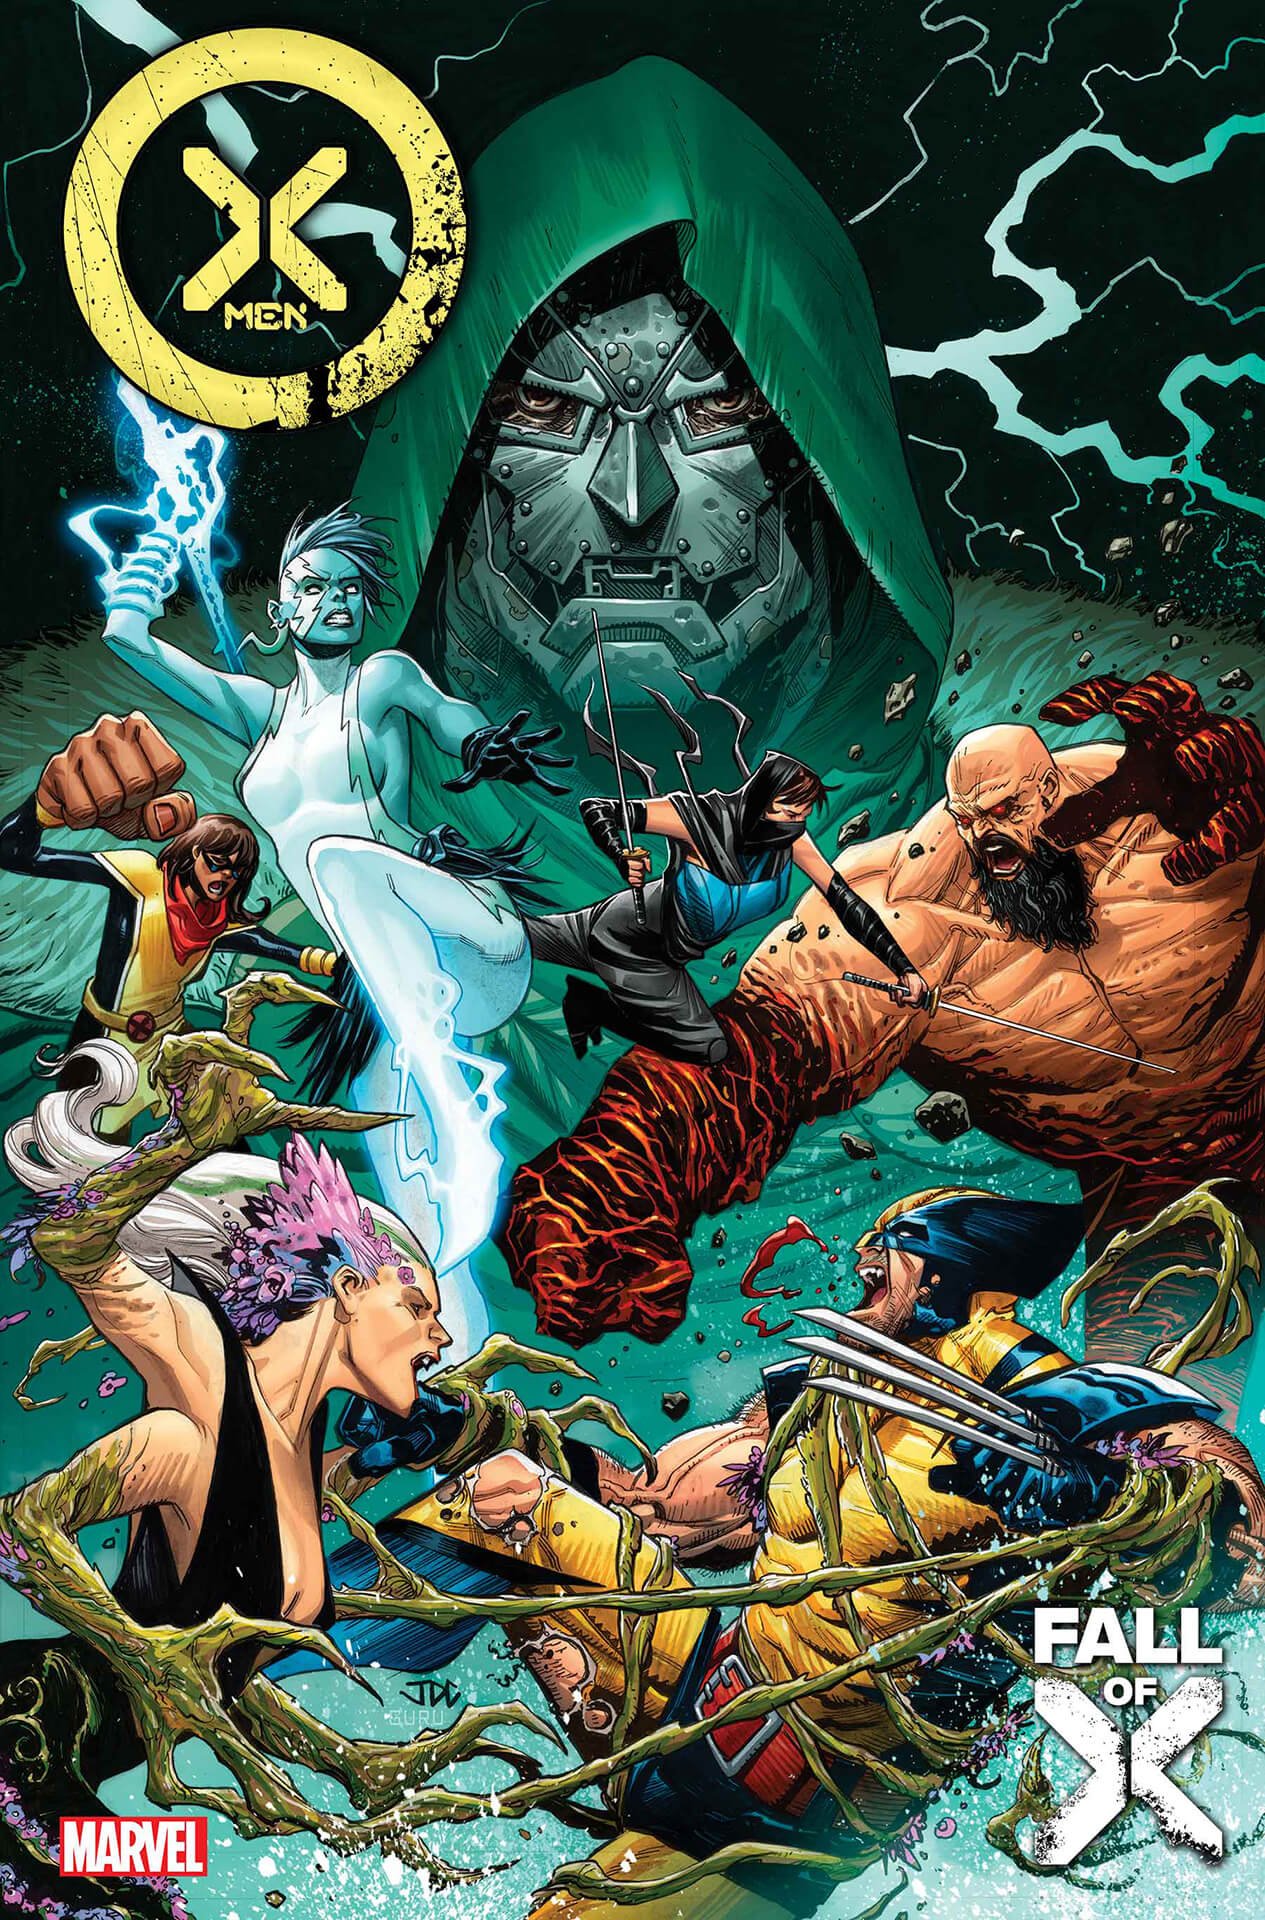 Couverture de X-Men 29 par Joshua Cassara, mettant en scène les X-Men de Latvérie : seront-ils les nouveaux X-men ?